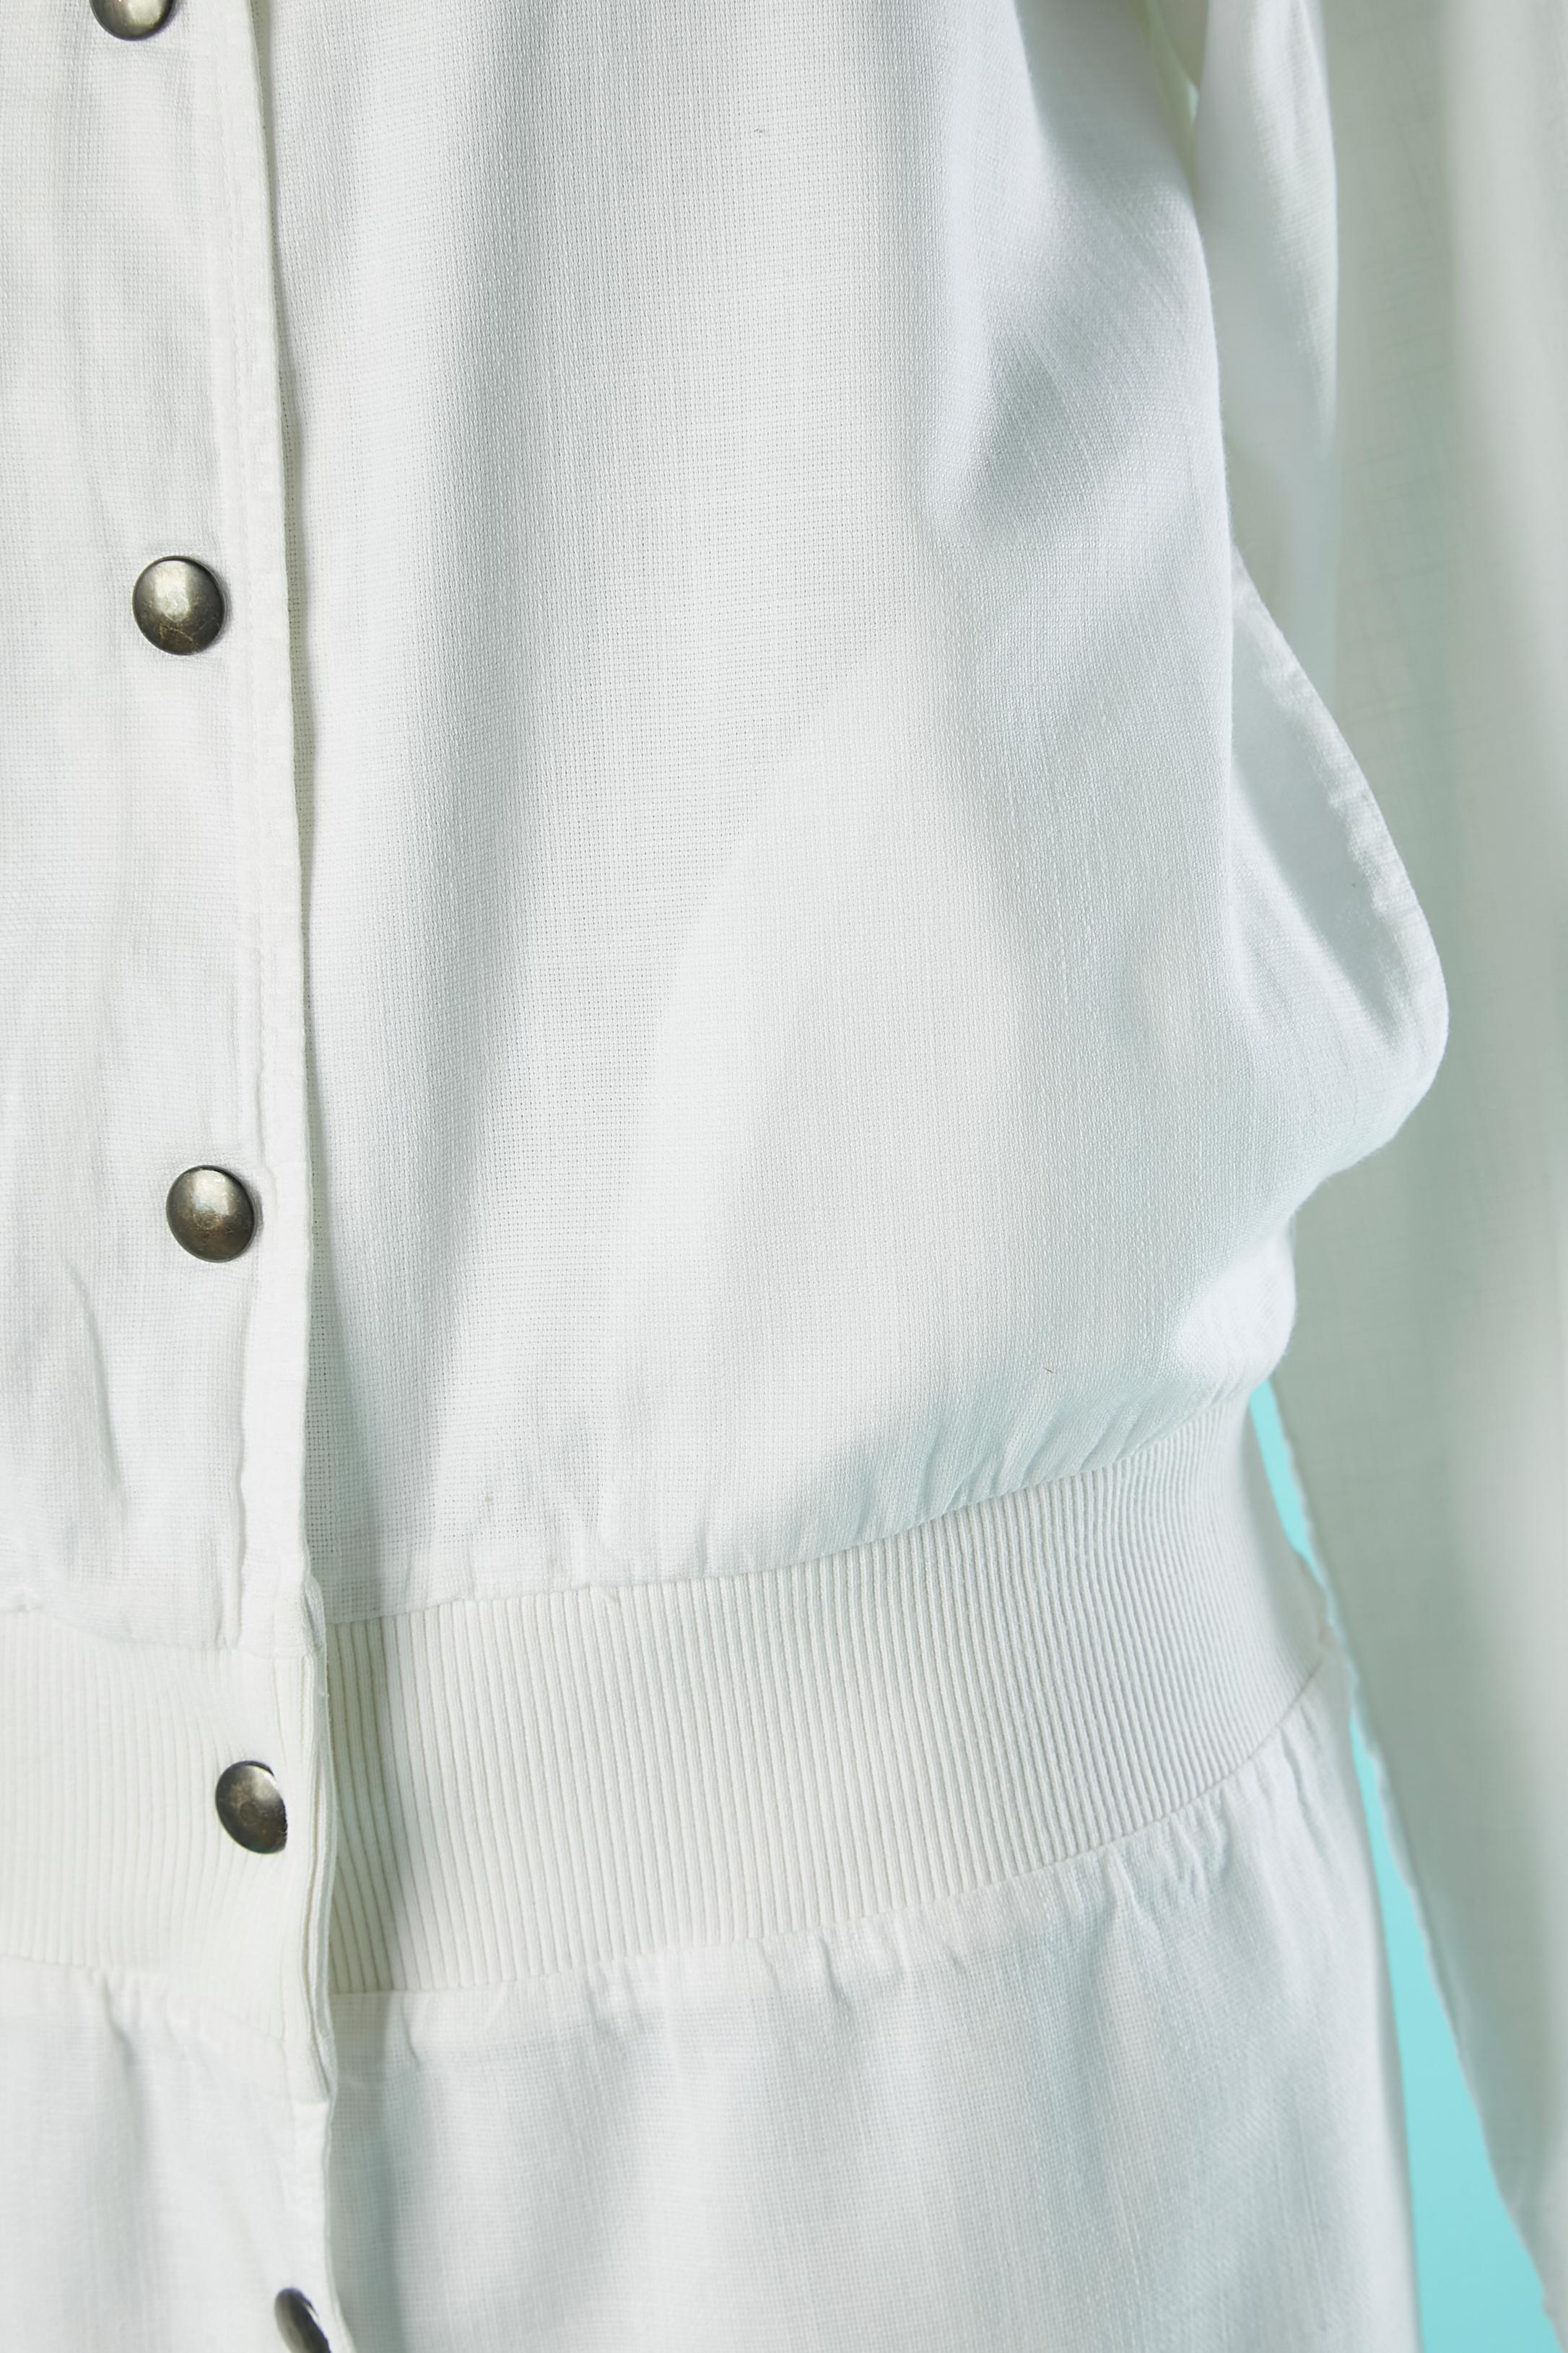 Manteau en coton blanc avec capuche et fermeture à boutons-pression. Il n'y a pas d'étiquette mais le tissu principal est en coton, peut être mélangé avec du lin et la doublure est 100% coton. Pochette sur les deux côtés.
Cette pièce provient de la